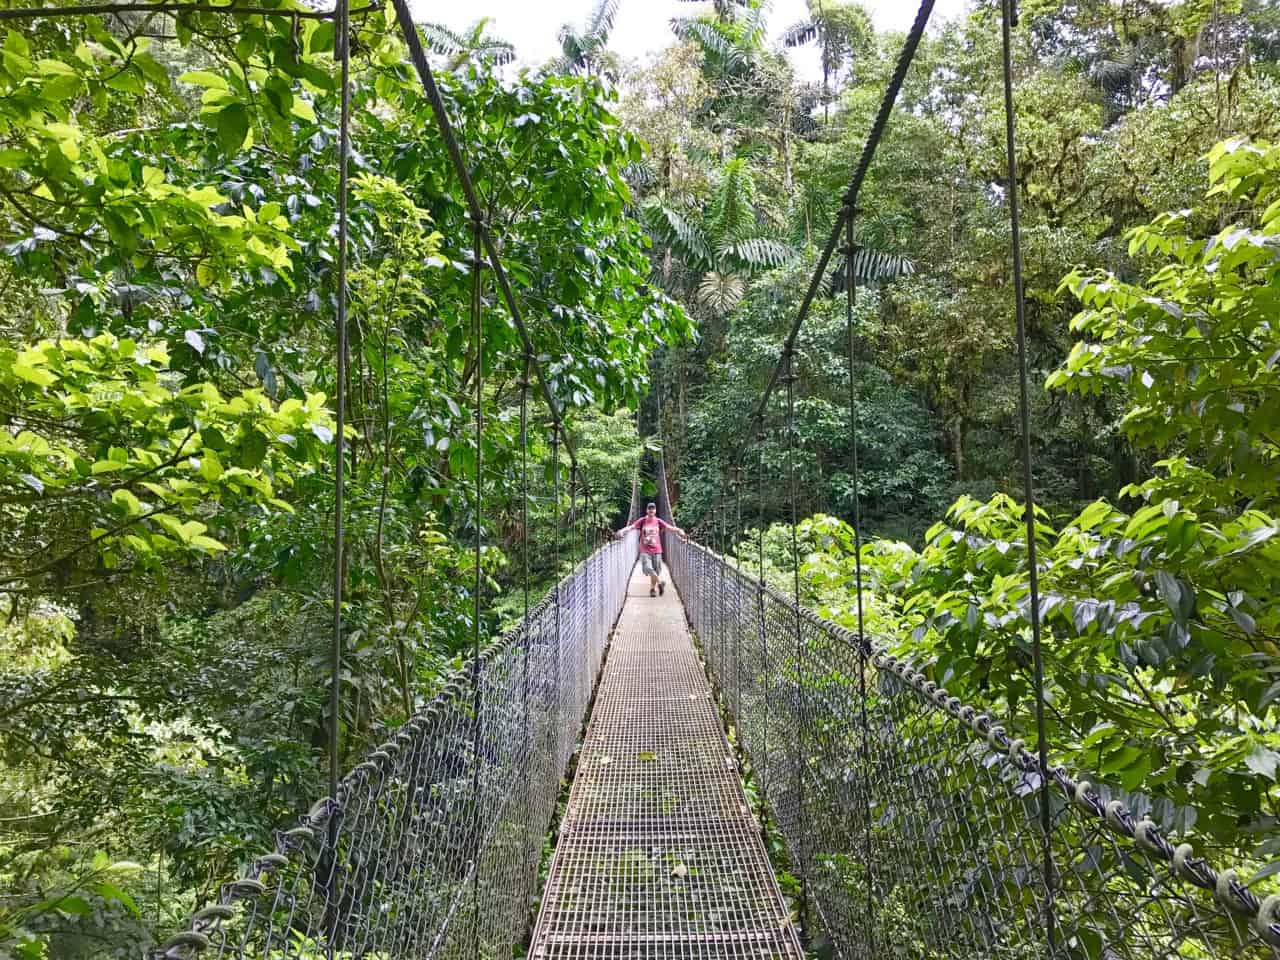  John si trova su un ponte sospeso sopra il baldacchino a Mistico, un parco in Costa Rica.